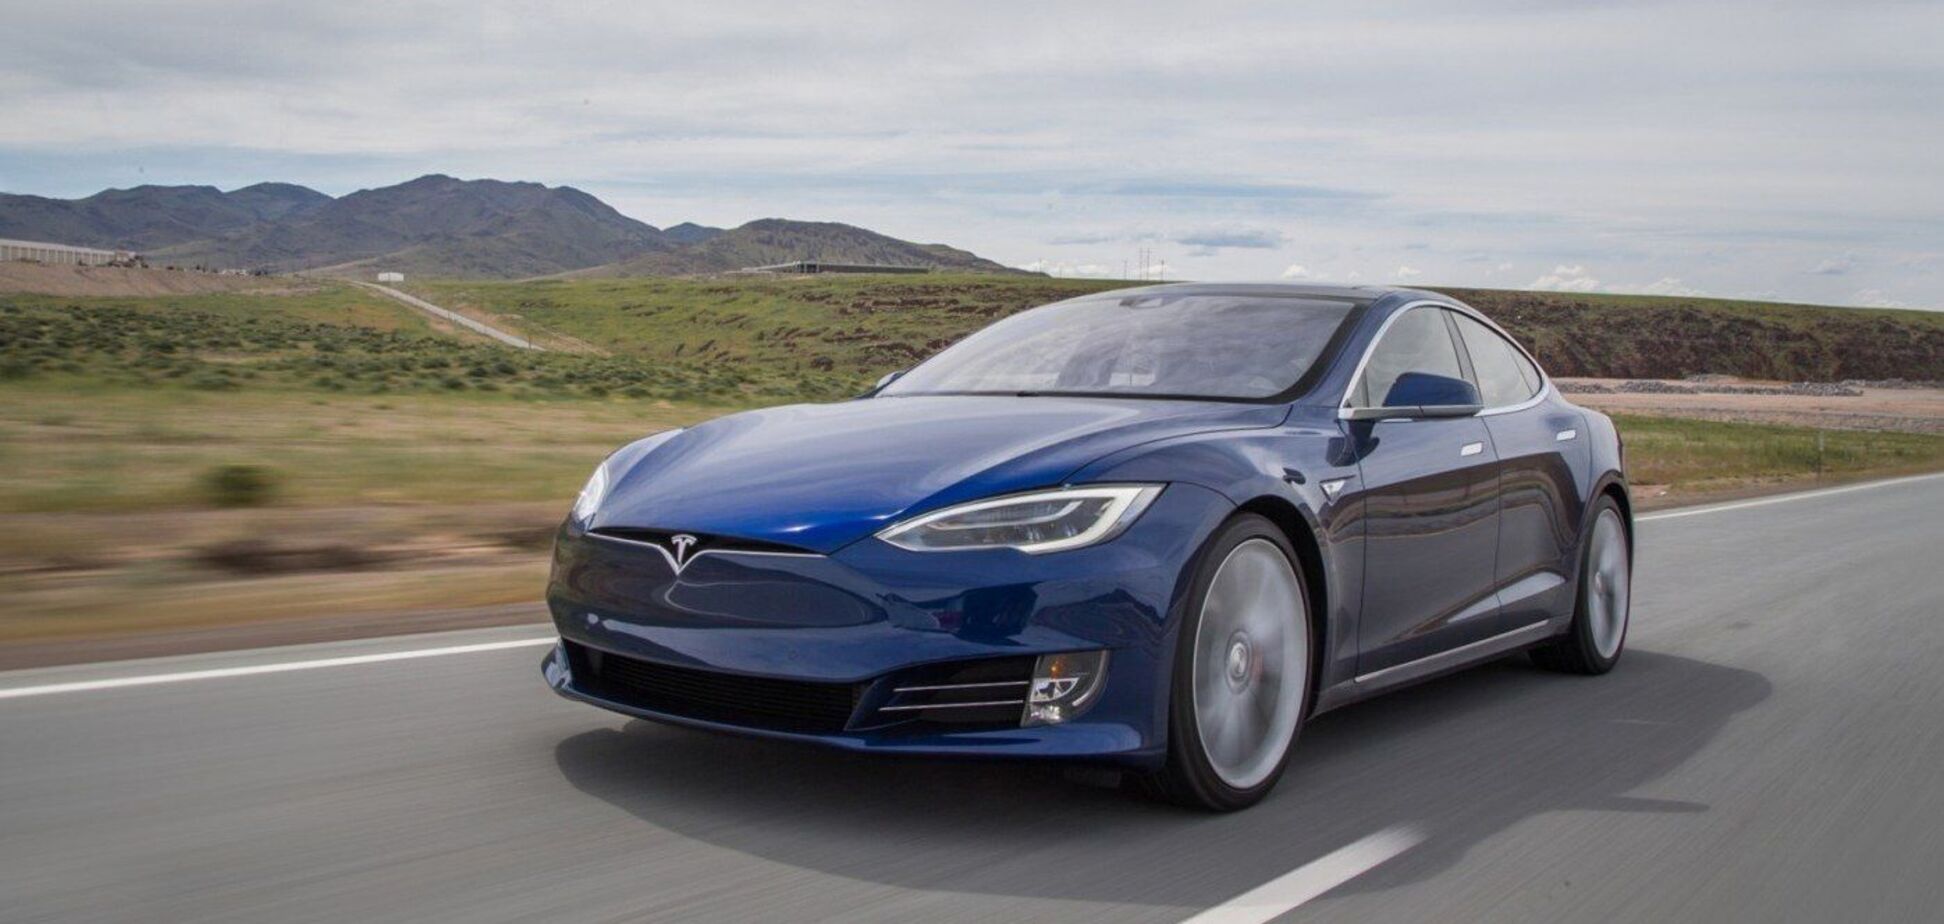 Автопилот Tesla протаранил машину на скорости 219 км/ч